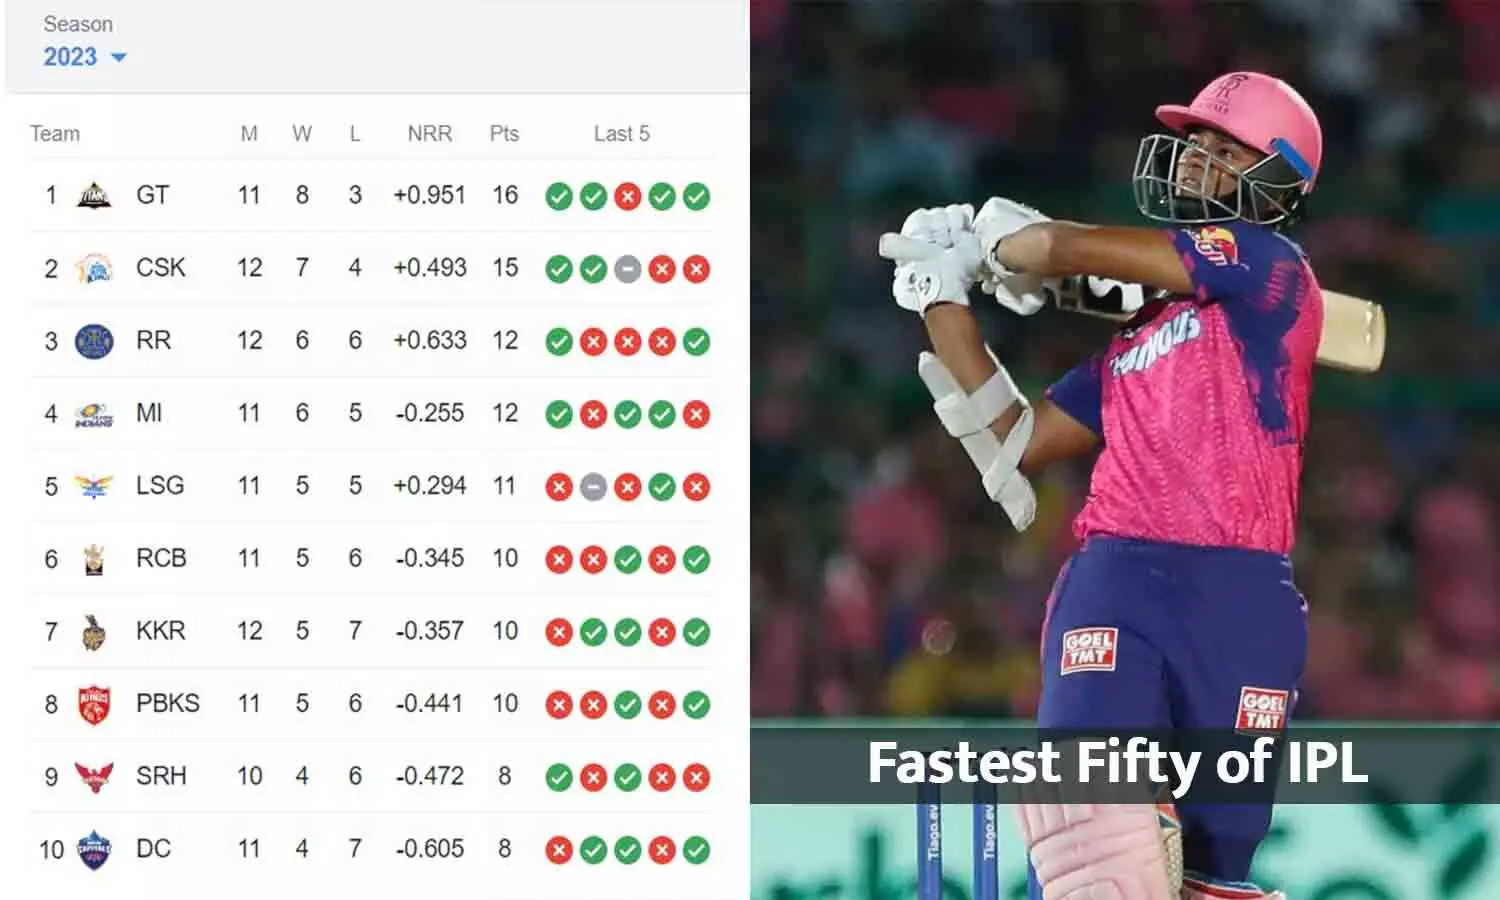 KKR Vs RR IPL 2023: राजस्थान ने कोलकाता को 9 विकेट से हराया, शतक से चूके यशस्वी जायसवाल ने लगाया IPL का सबसे तेज अर्धशतक